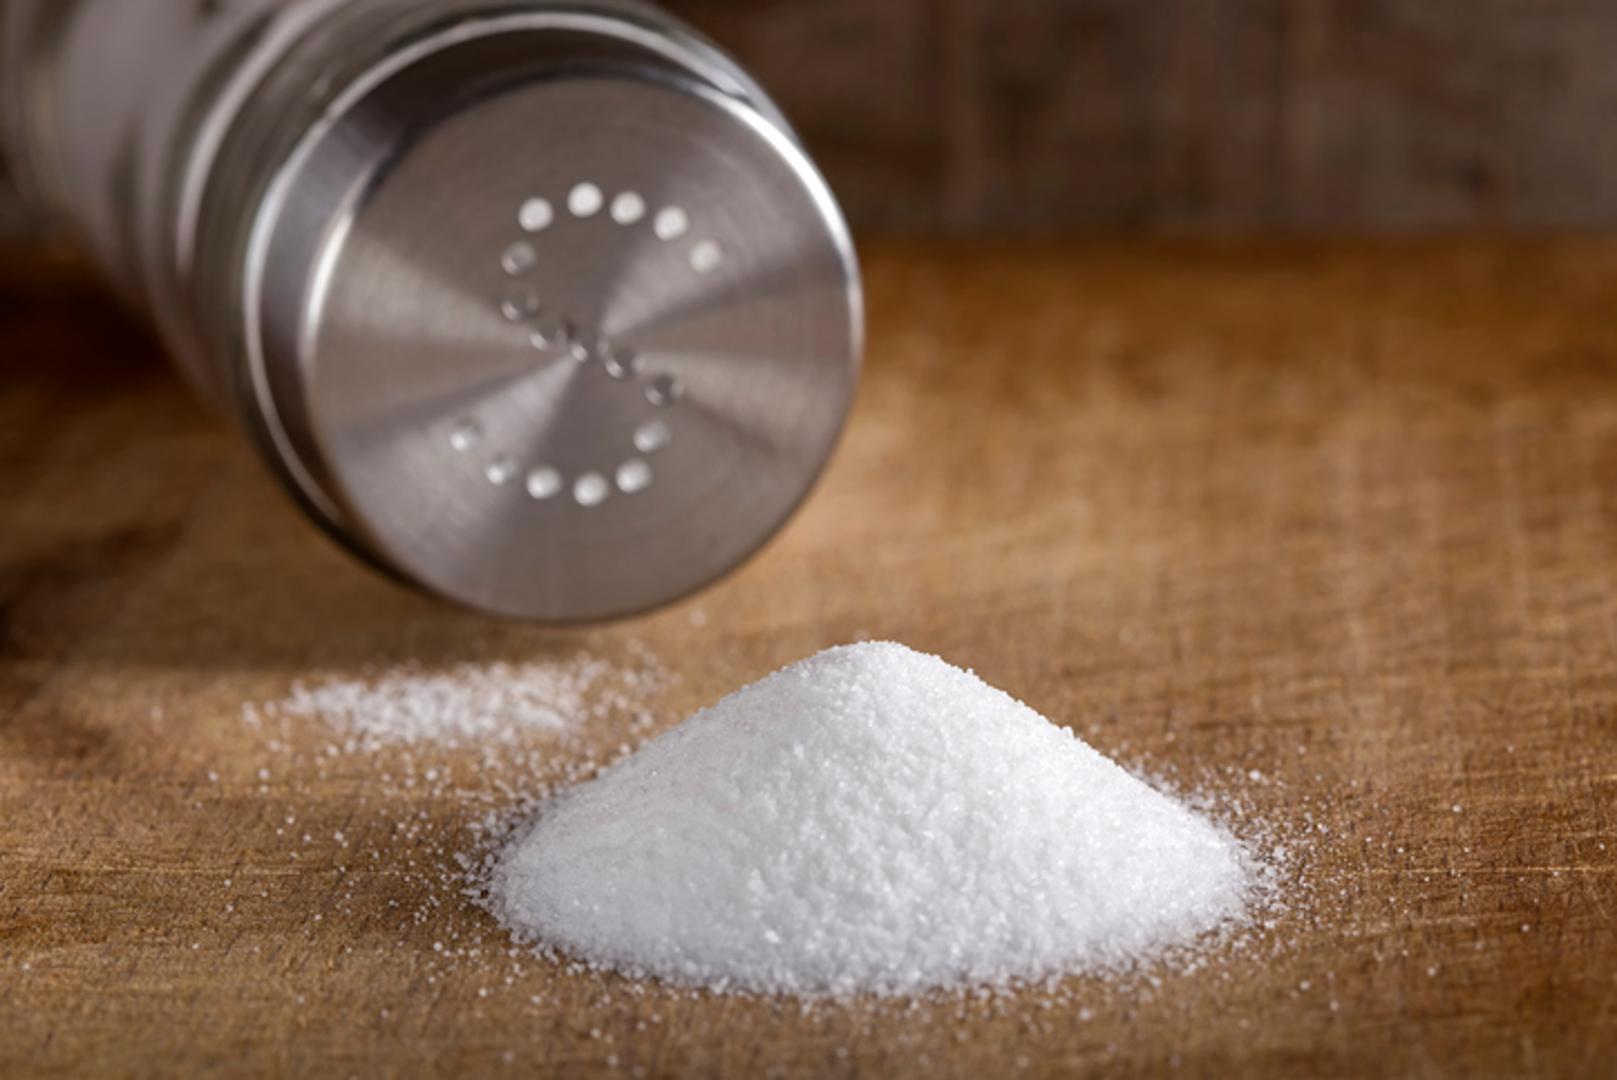 Smanjite sol – Presoljena hrana povećava krvni tlak i začepljuje krvne žile. Kod prerađene hrane obavezno provjeravajte količinu soli, a kada sami kuhate, pazite koliko solite i ne uzimajte više od preporučenih šest grama dnevno.